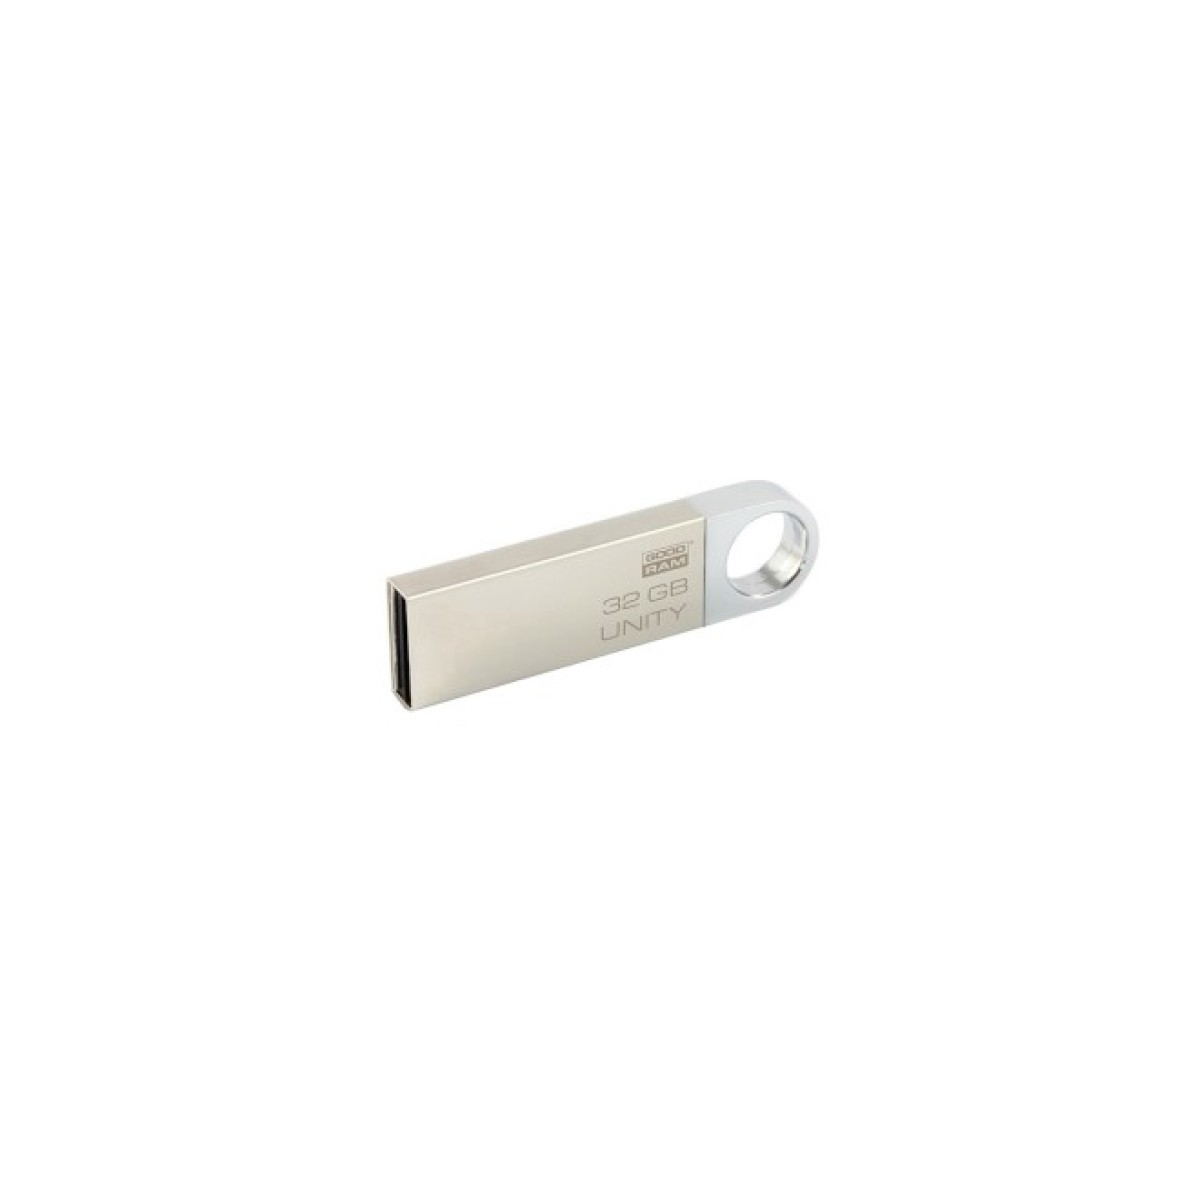 USB флеш накопитель Goodram 32GB UUN2 (Unity) Silver USB 2.0 (UUN2-0320S0R11) 98_98.jpg